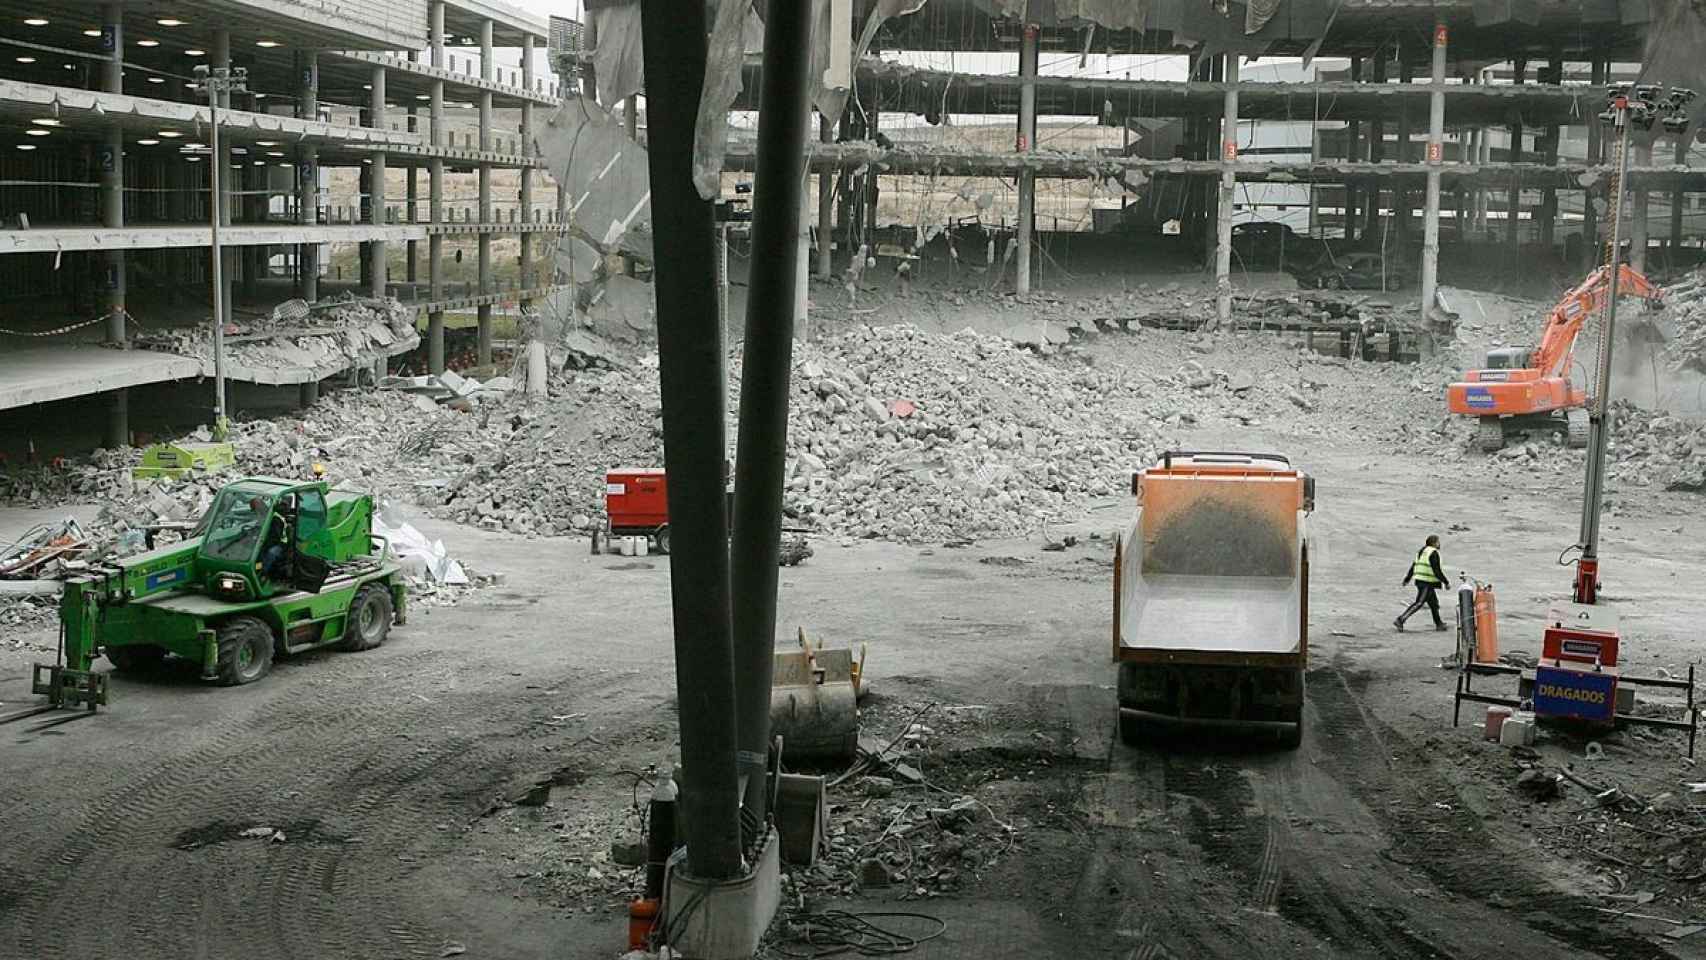 Imagen del atentado en la Terminal 4 del aeropuerto de Madrid-Barajas, perpetrado el 30 de diciembre de 2006